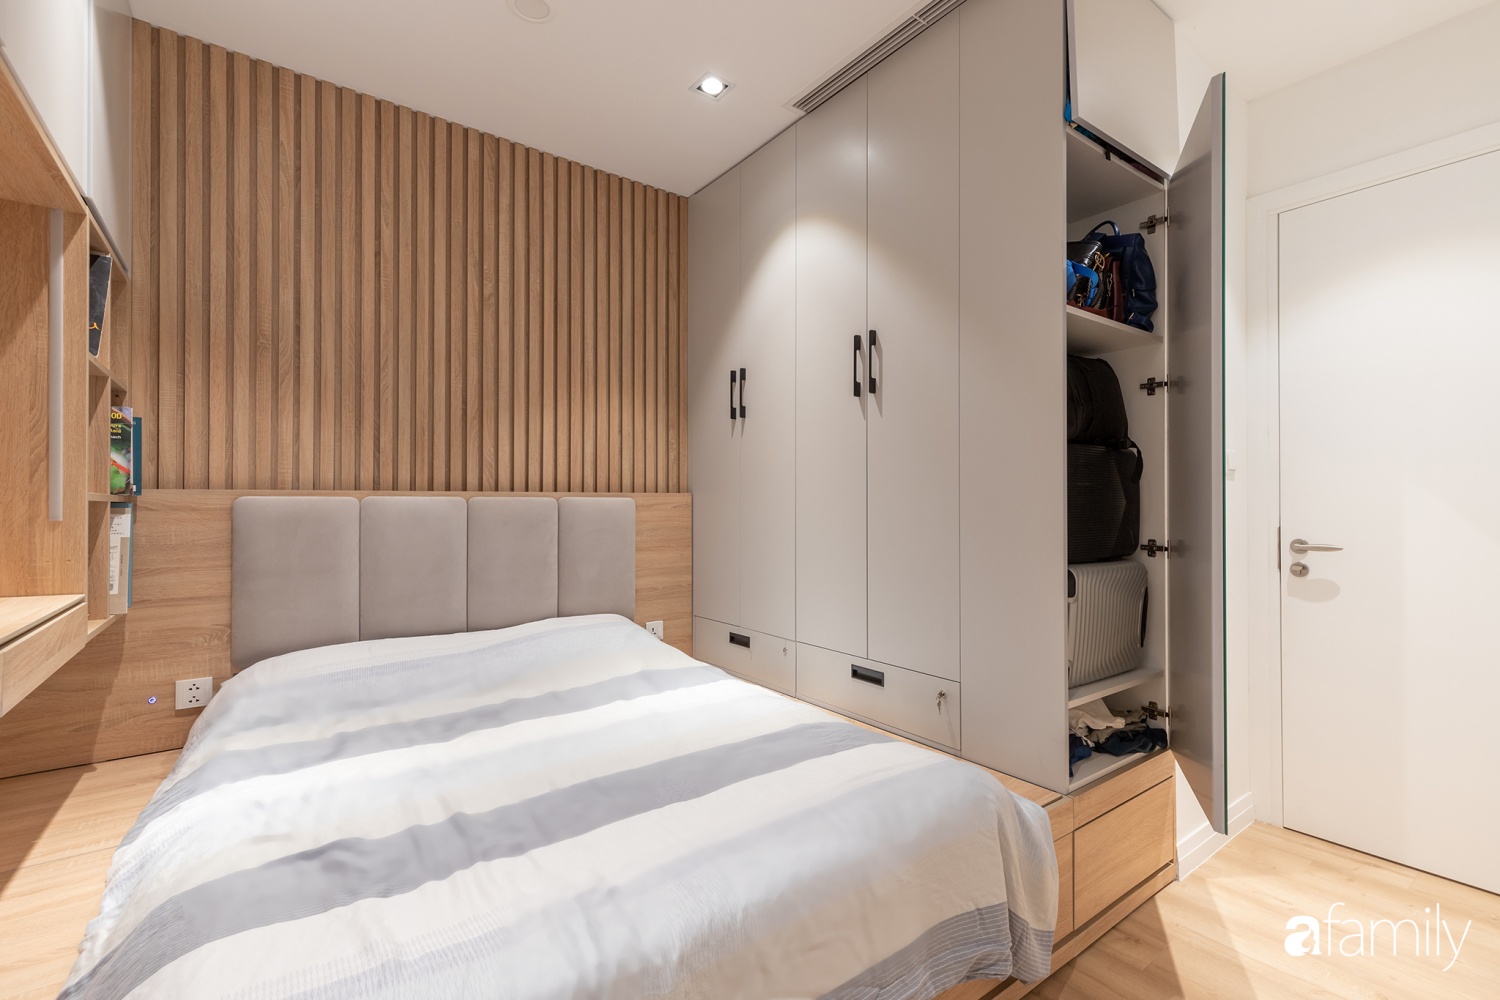 Căn hộ 74m² thiết kế ấn tượng theo phong cách Art Decor có chi phí hoàn thiện 300 triệu đồng ở Hà Nội - Ảnh 16.